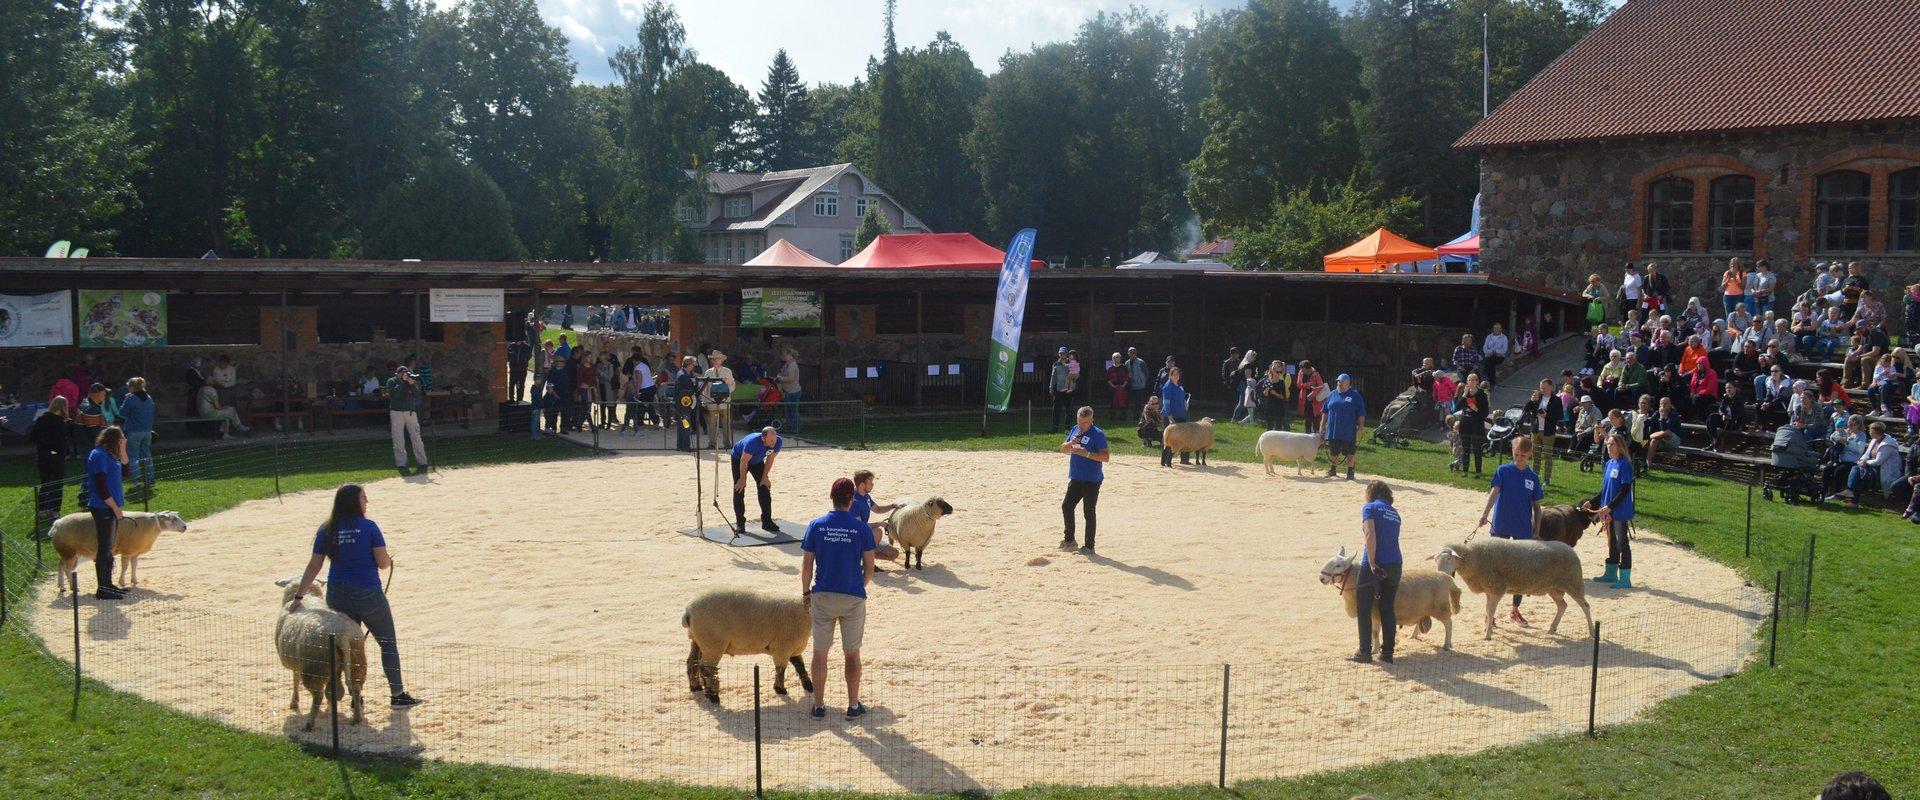 Estnisches Landwirtschaftsmuseum, Zuchttierveranstaltung, auf dem Bild am Wettbewerb teilnehmende Schafe